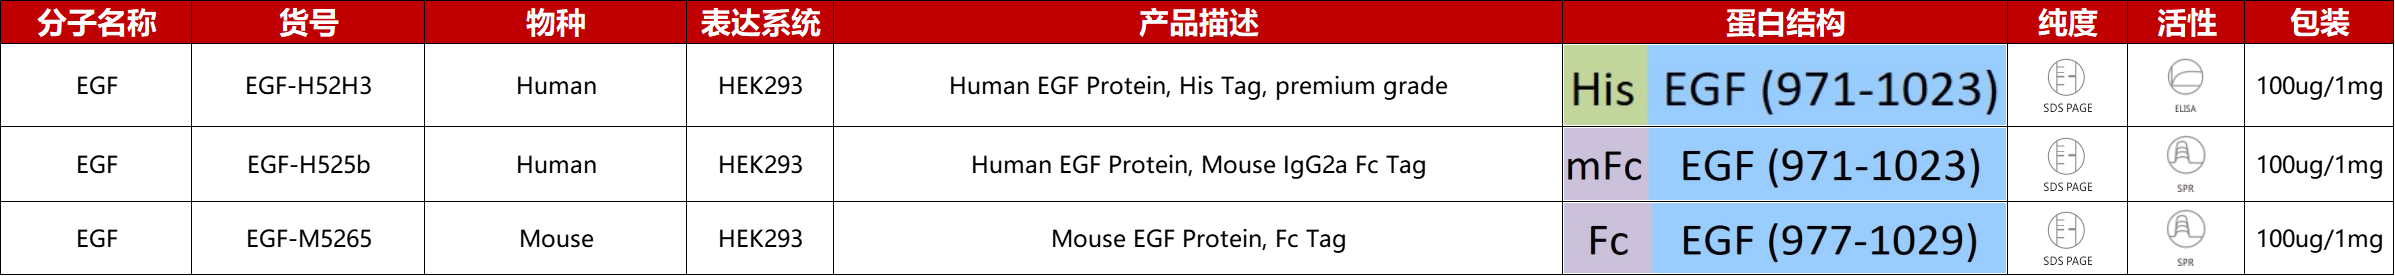 EGF重组蛋白产品列表